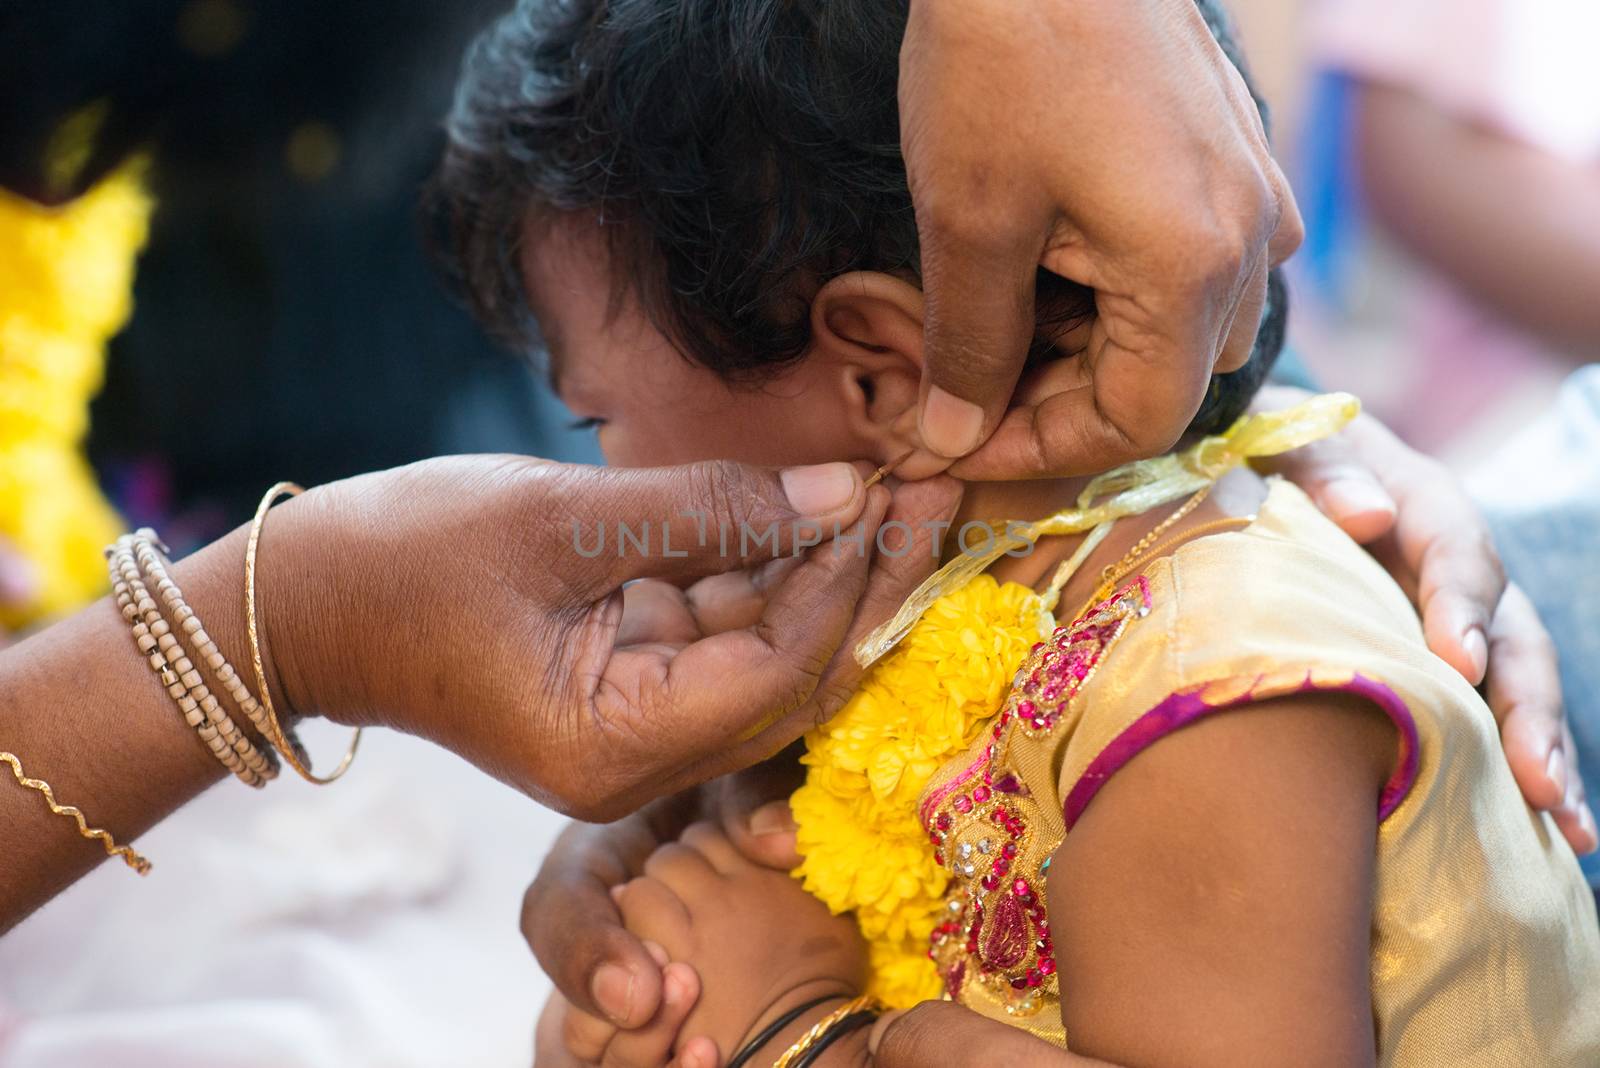 Baby girl in ear piercing ceremony by szefei